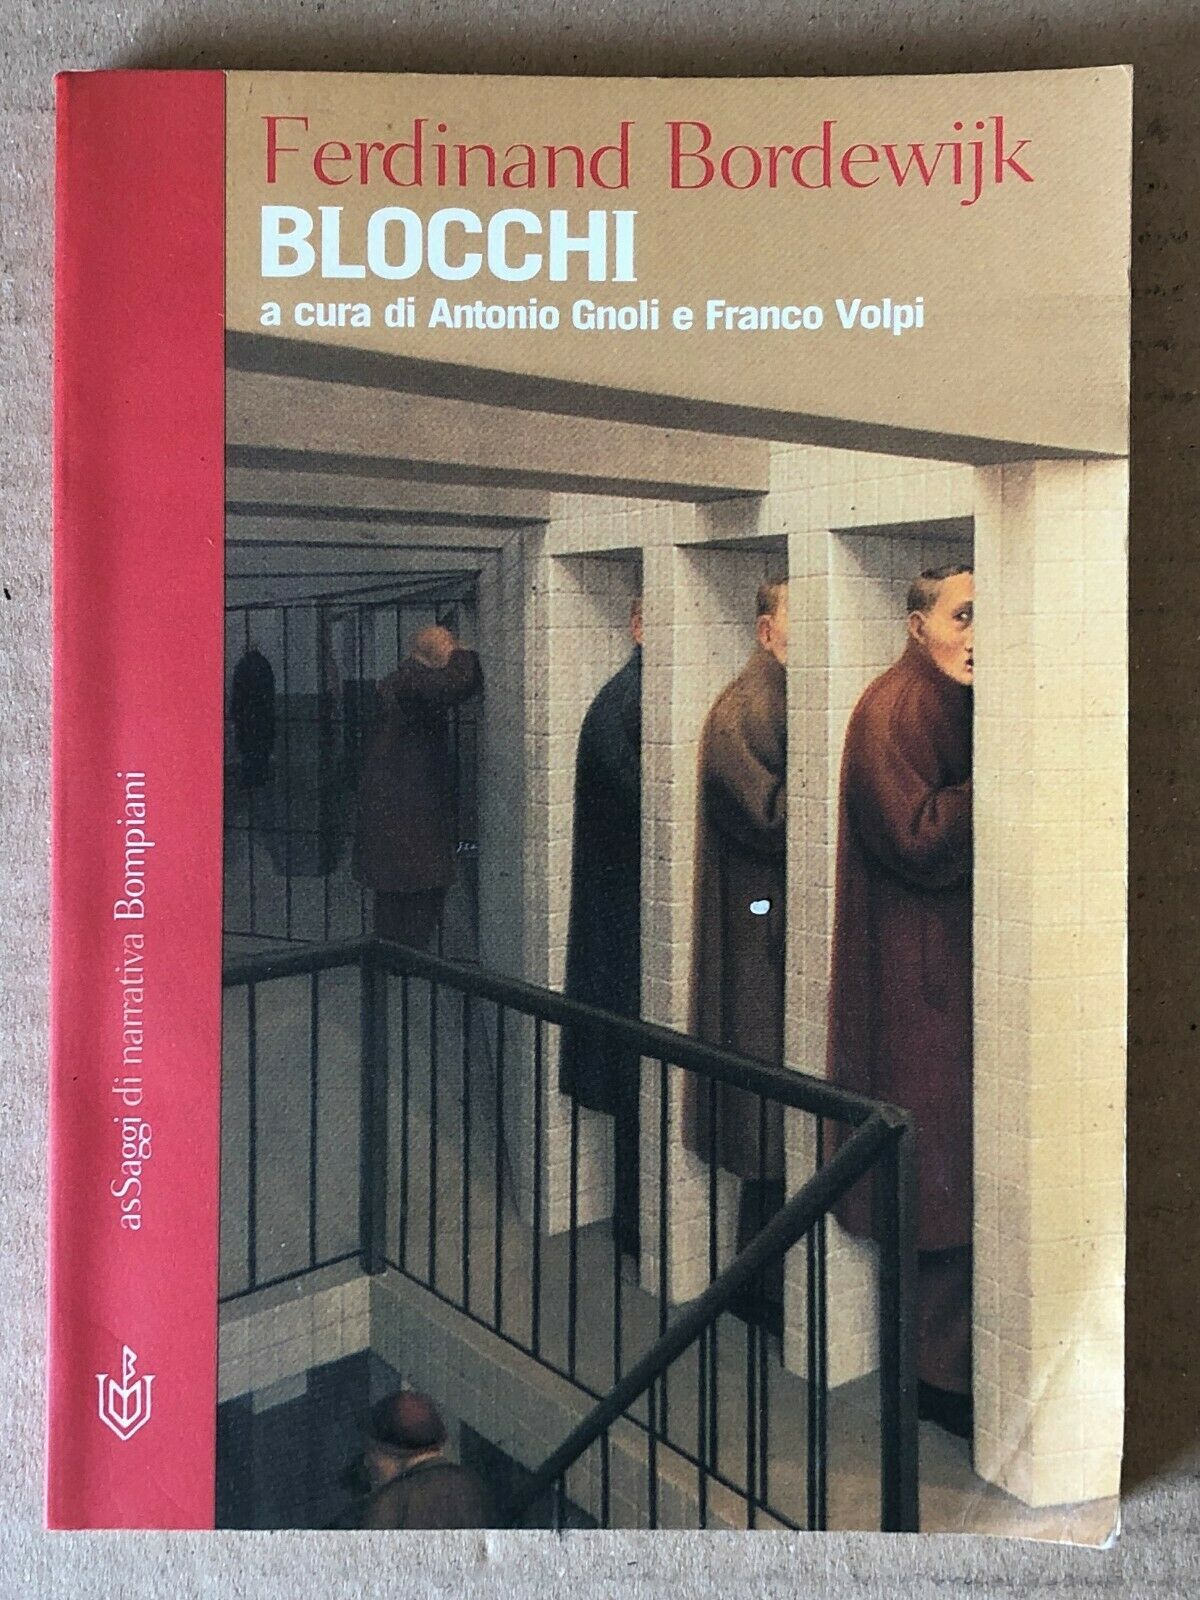 Appare un titolo ormai molto raro e mai più ristampato in italiano: “Blocchi” (2002) di Ferdinand Bordewijk